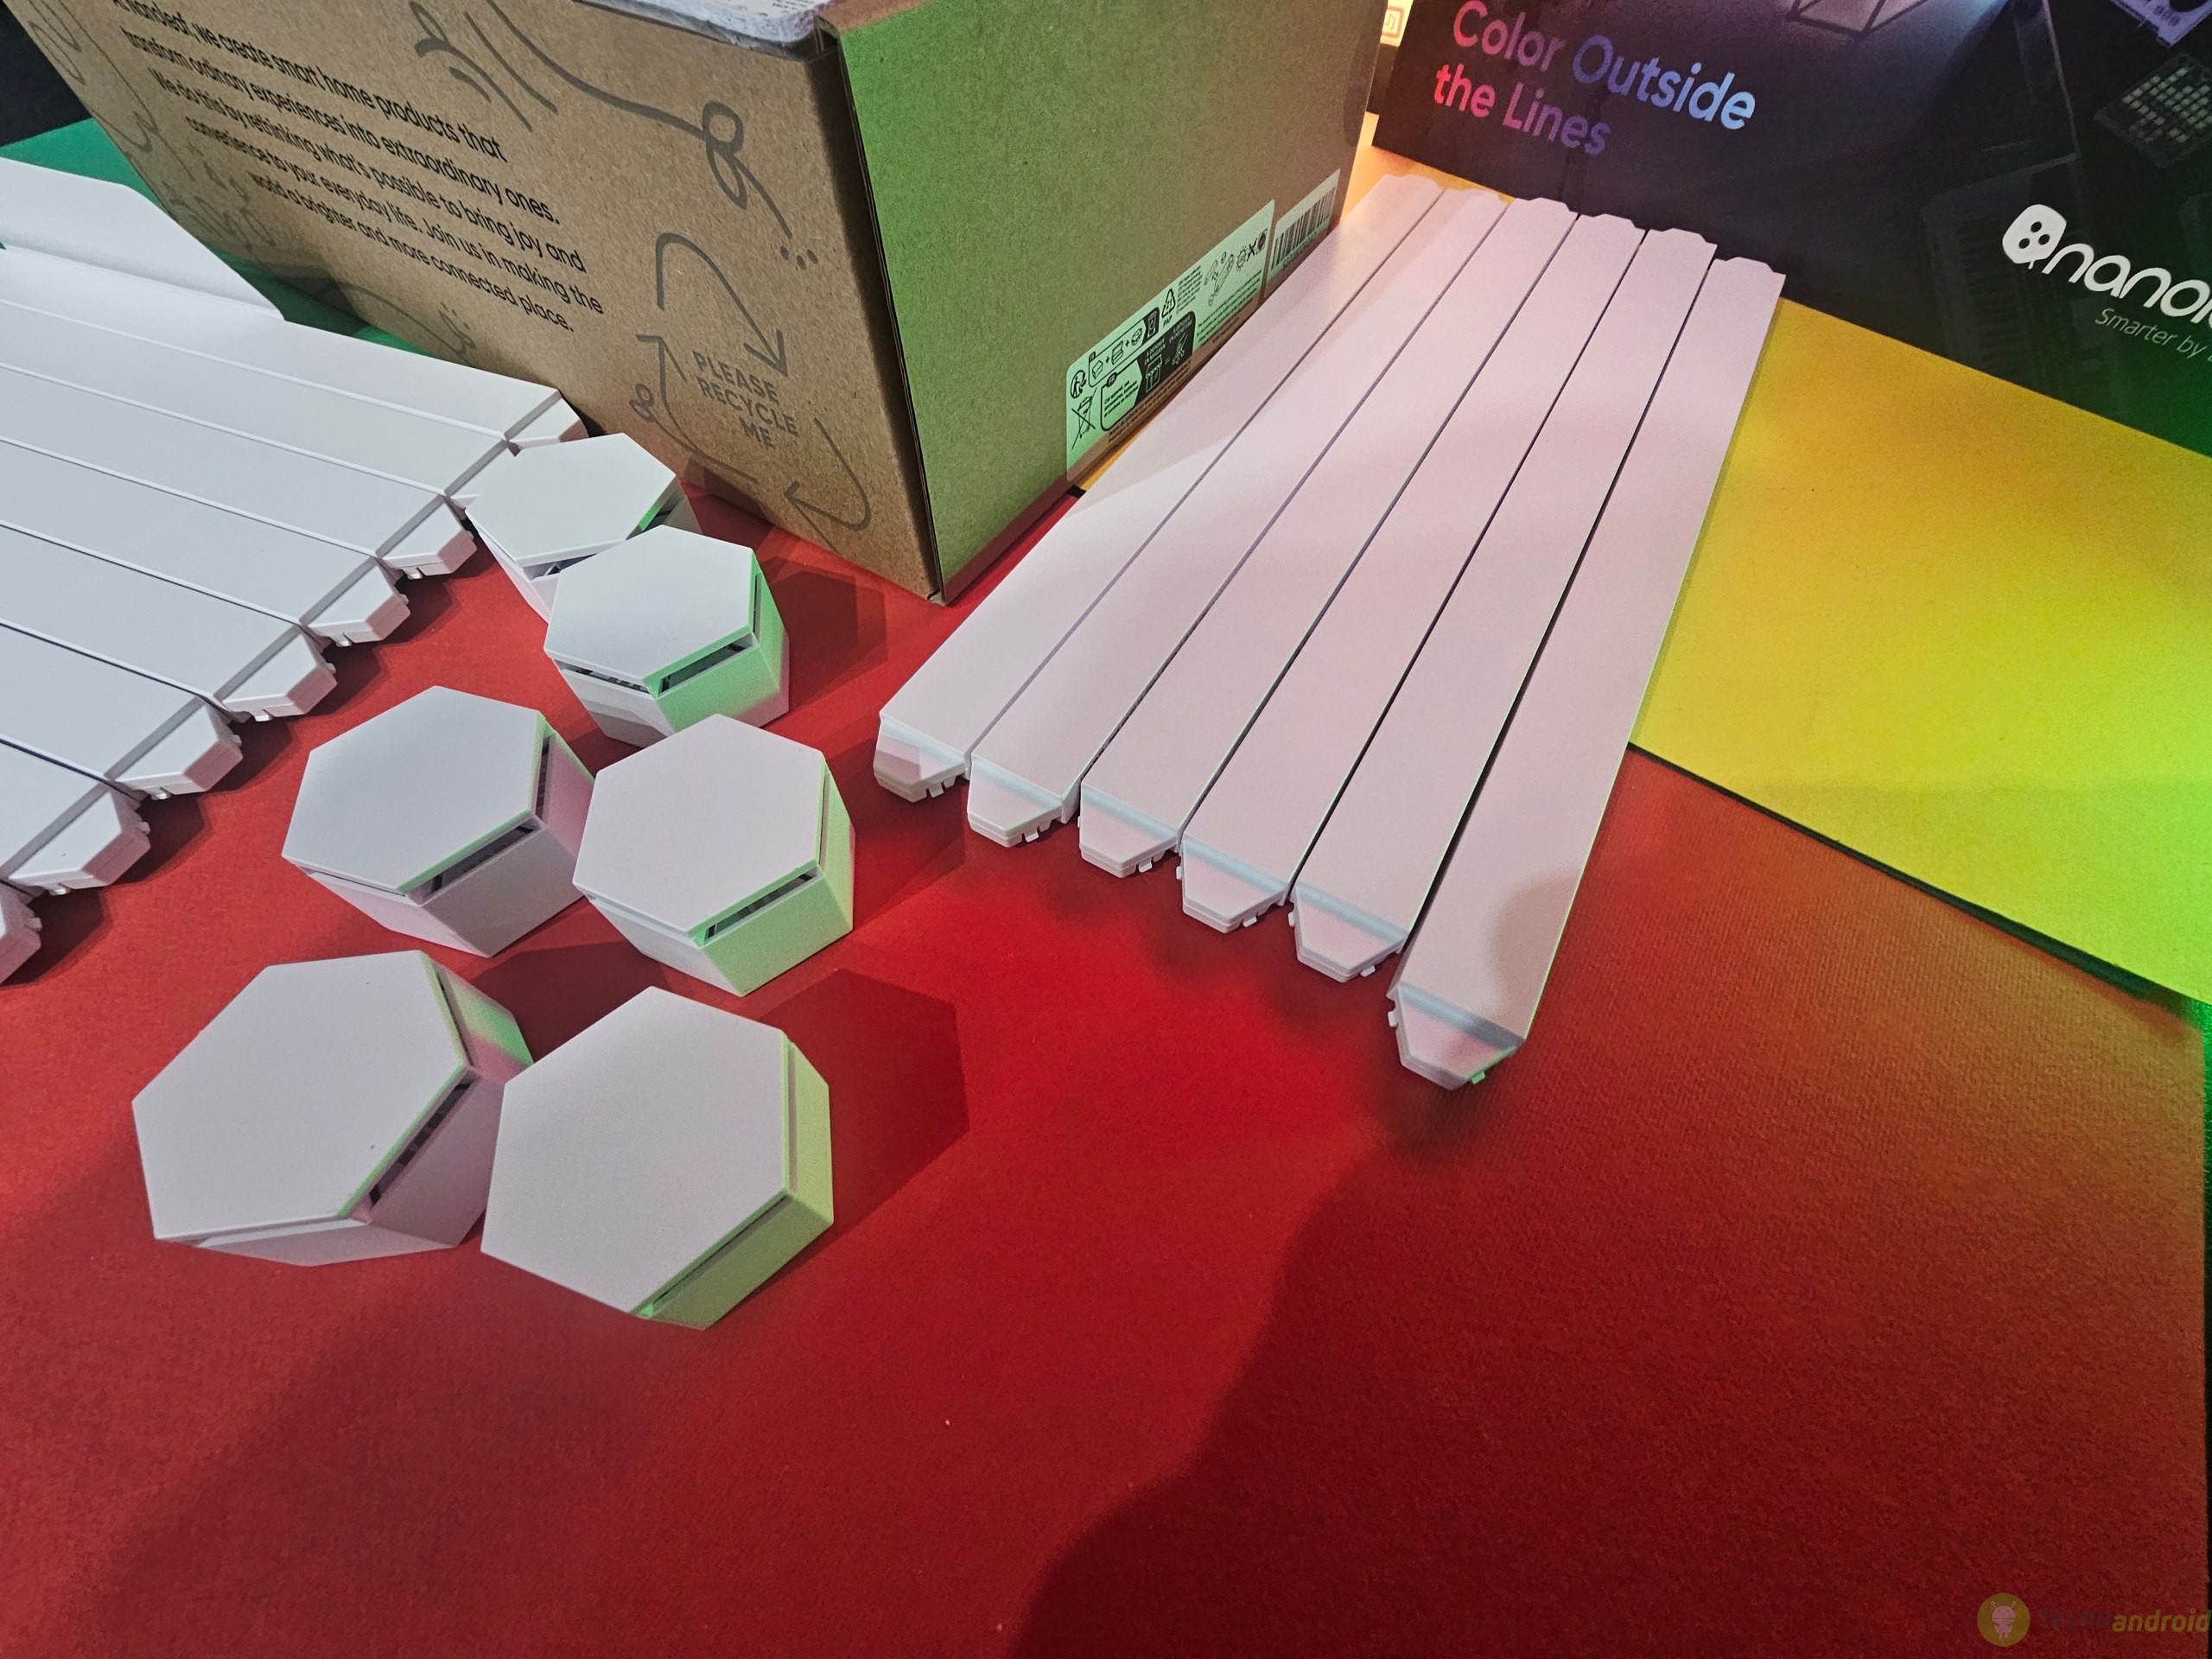 Recensione Nanoleaf Lines: le barre LED RGB diventano smart